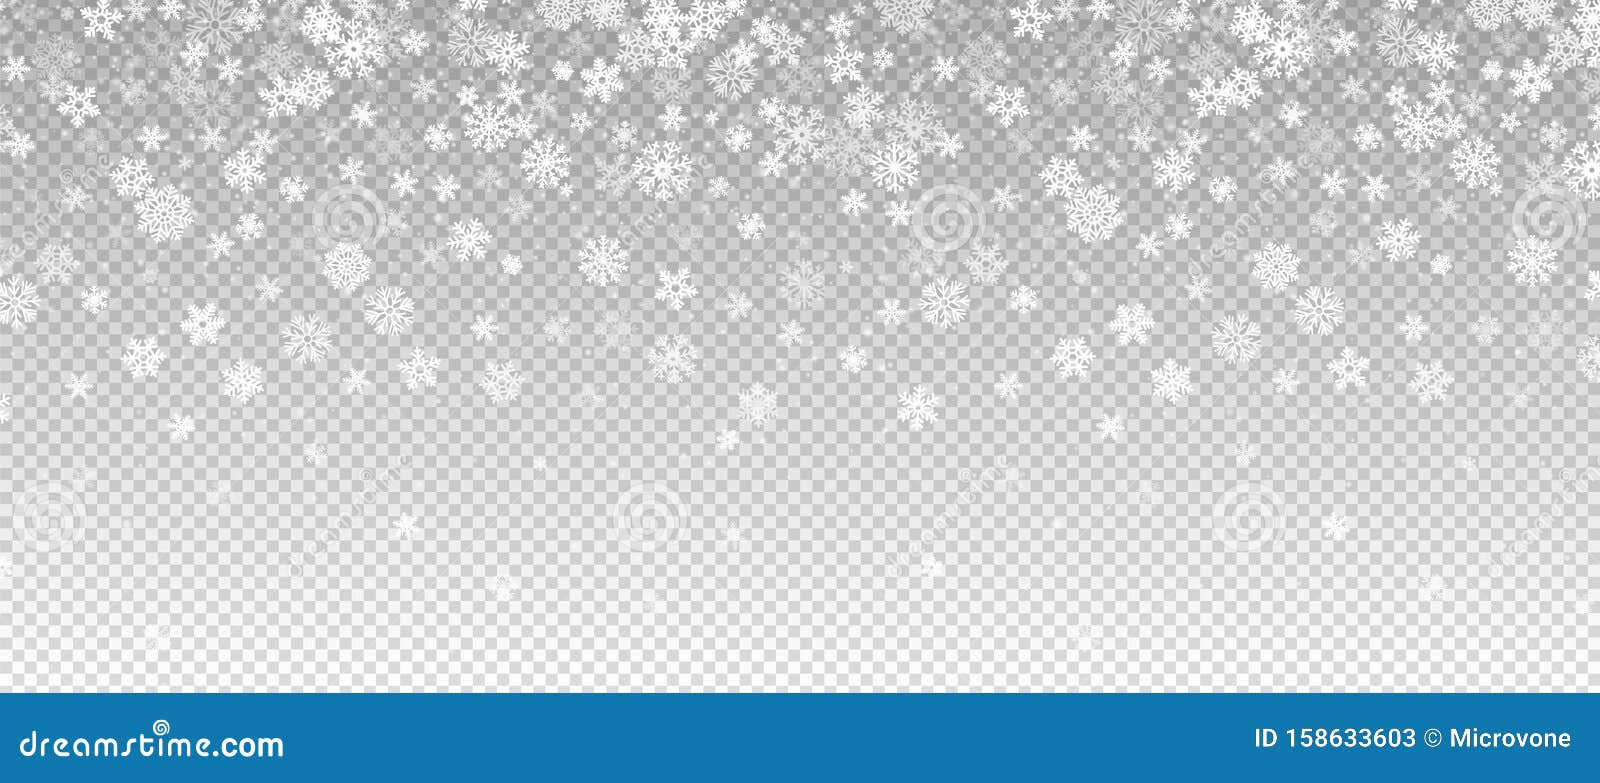 Neve invernale Nevica in caduta, bandiera Bordo delle nevi natalizie dei vettori isolato su sfondo trasparente